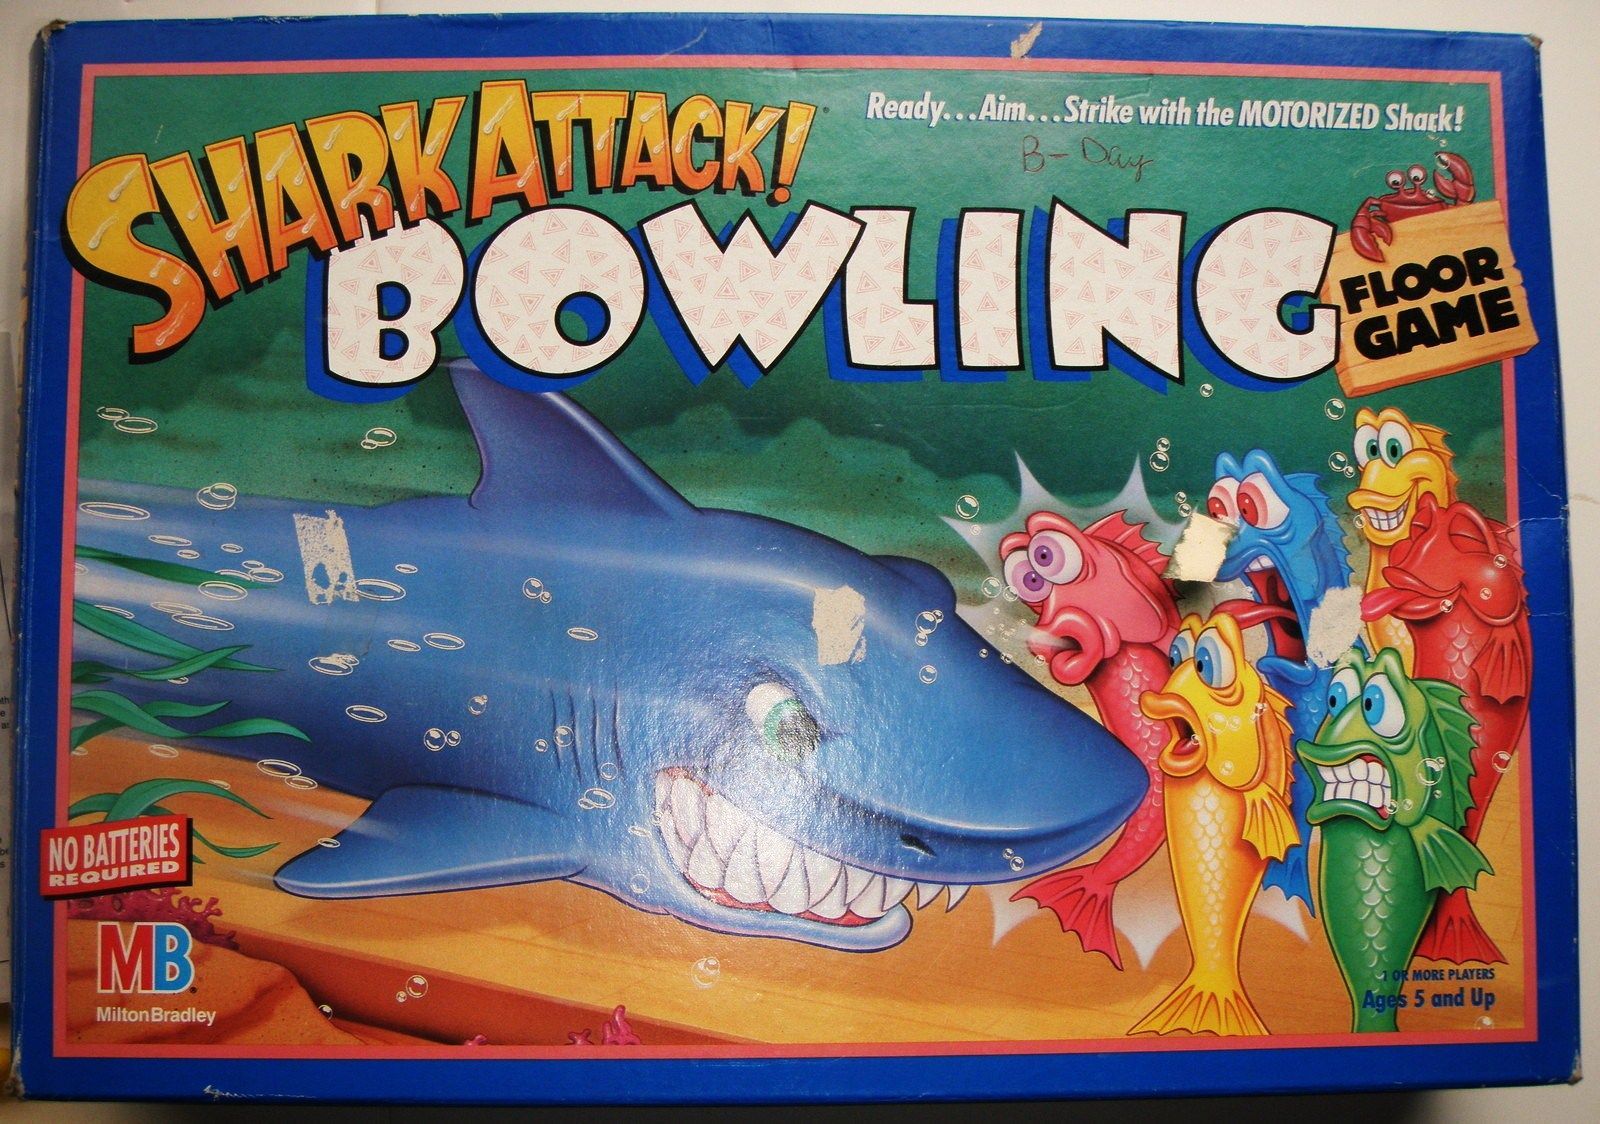 Shark Attack! Bowling